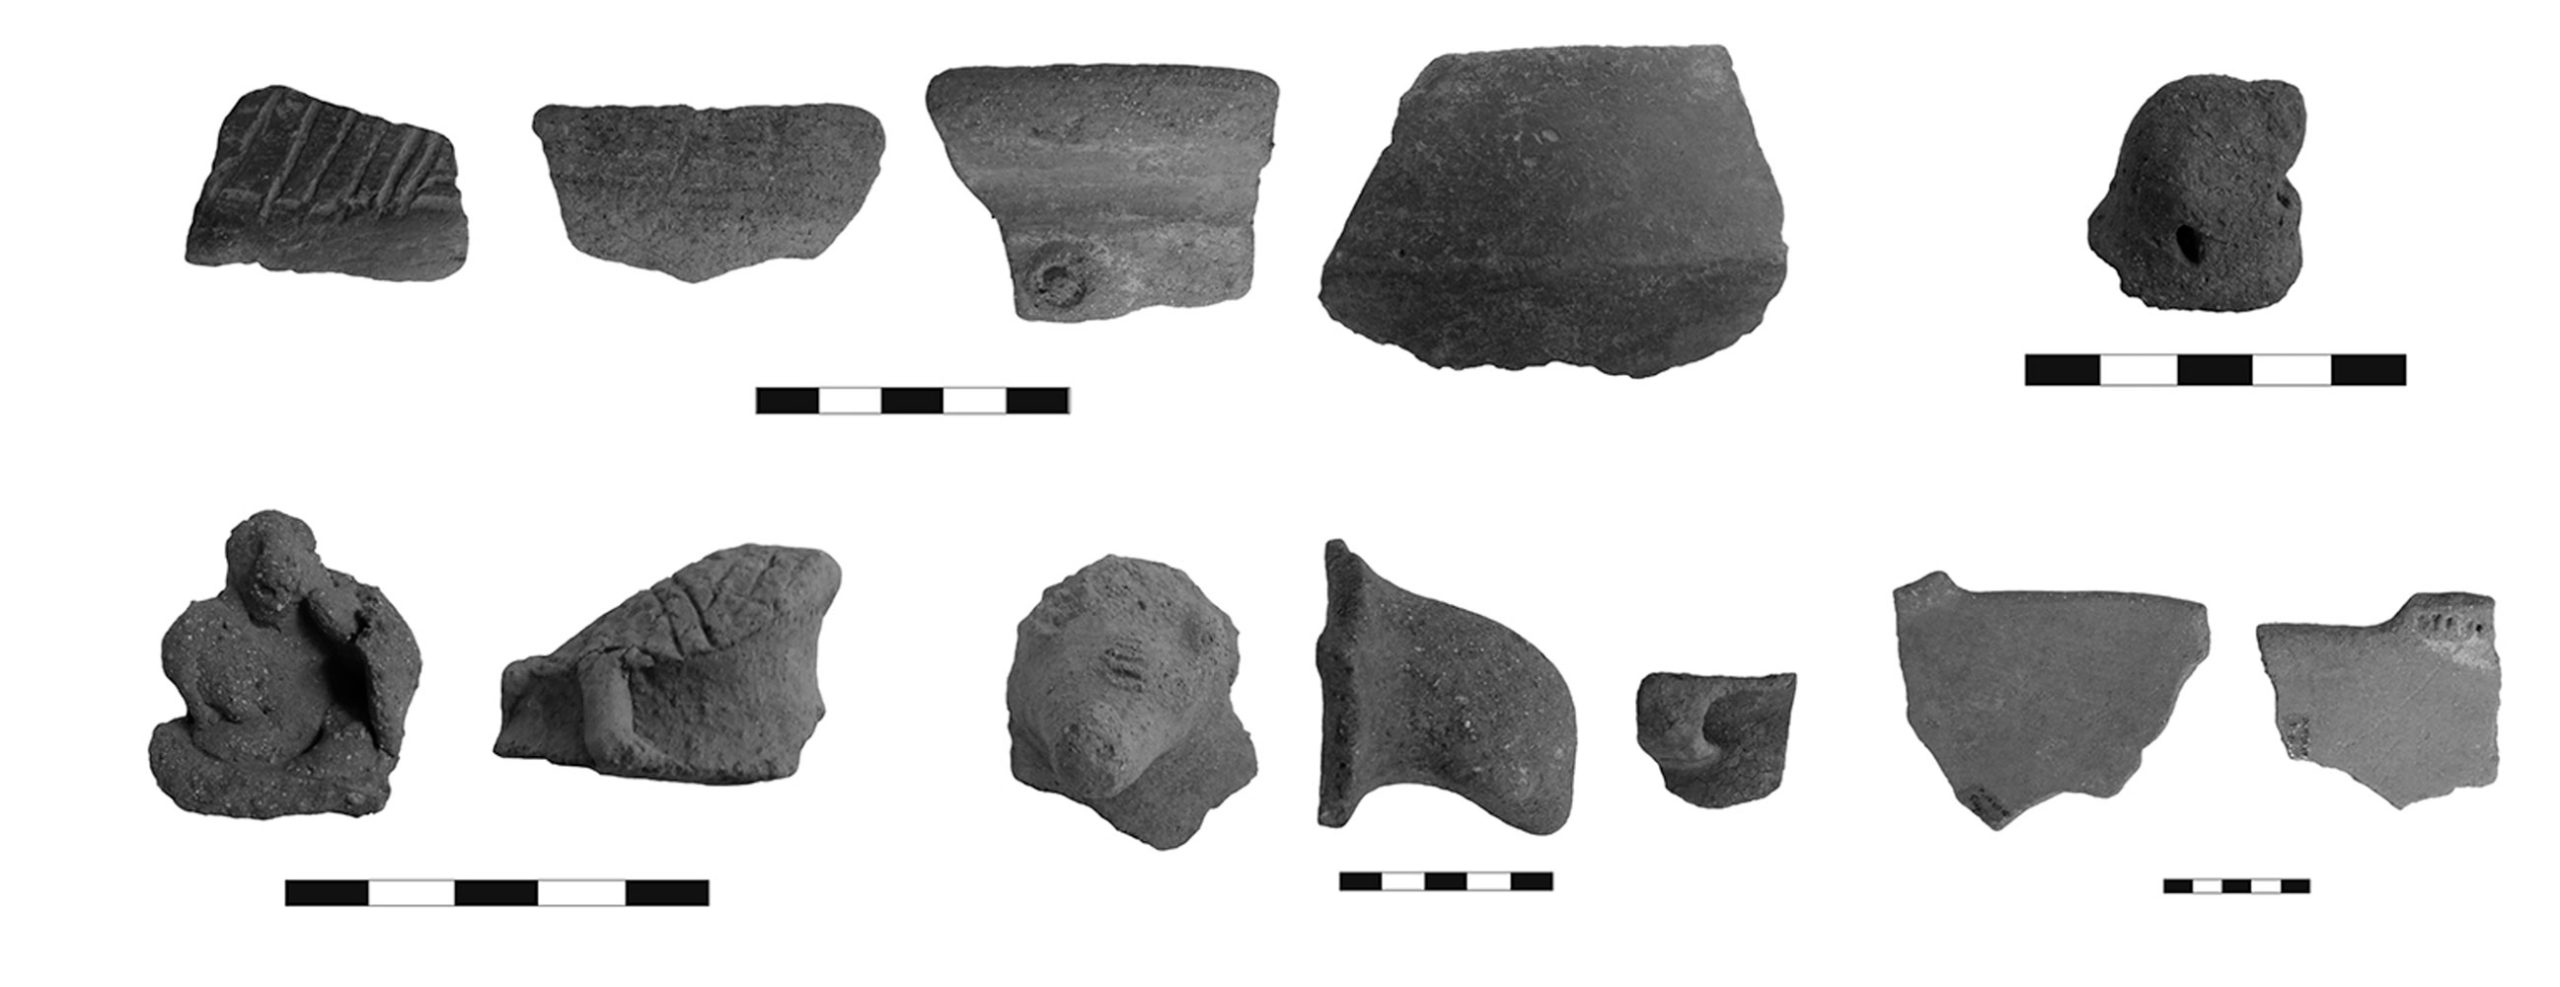 Fragmentos de cerámica diagnóstica, sitios período Chiriquí, península de Osa (Fotos: Francisco Corrales)